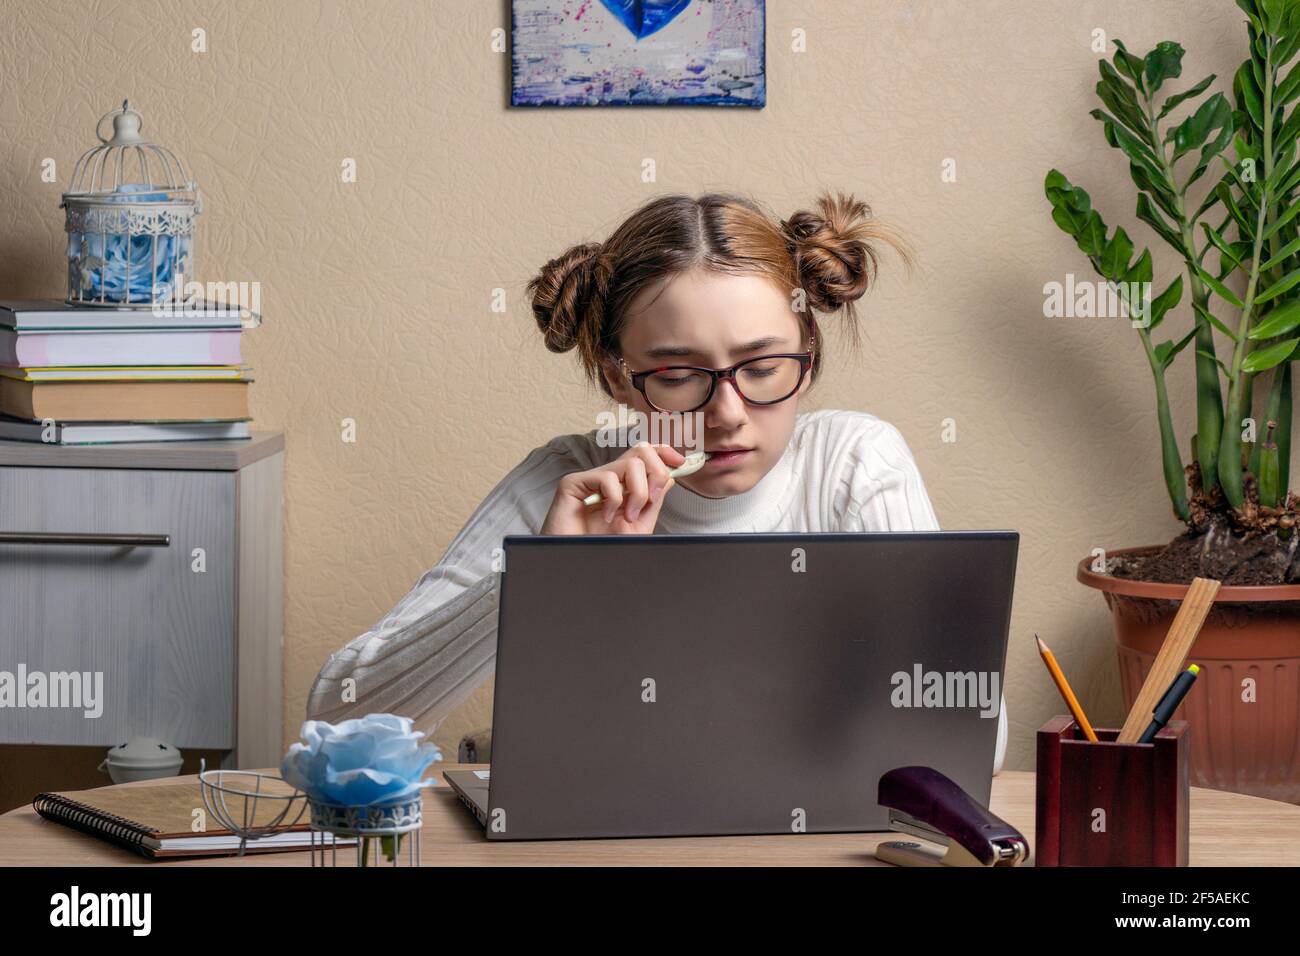 Schöne ernsthafte Teenager-Mädchen in Brille ist online auf einem Laptop verlobt. Ein Teenager-Mädchen starrt aufmerksam auf einen Laptop-Bildschirm und kaut nervös auf einem pe Stockfoto